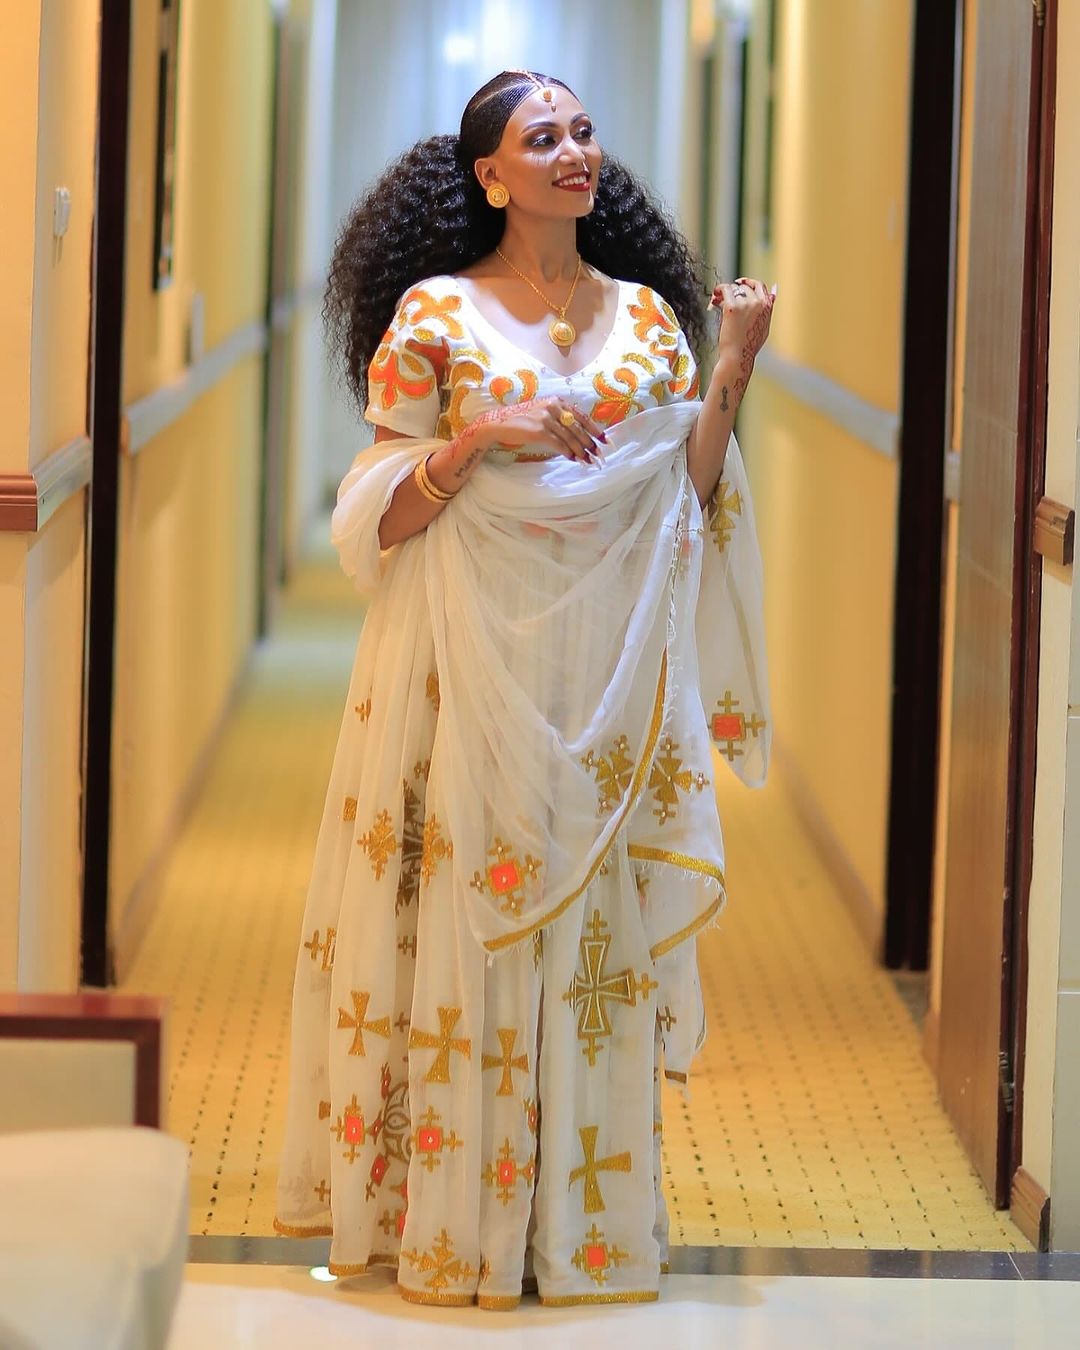 Orange With Golden Design Habesha Dress Wedding Habesha Kemis Modern Ethiopian Dress Style